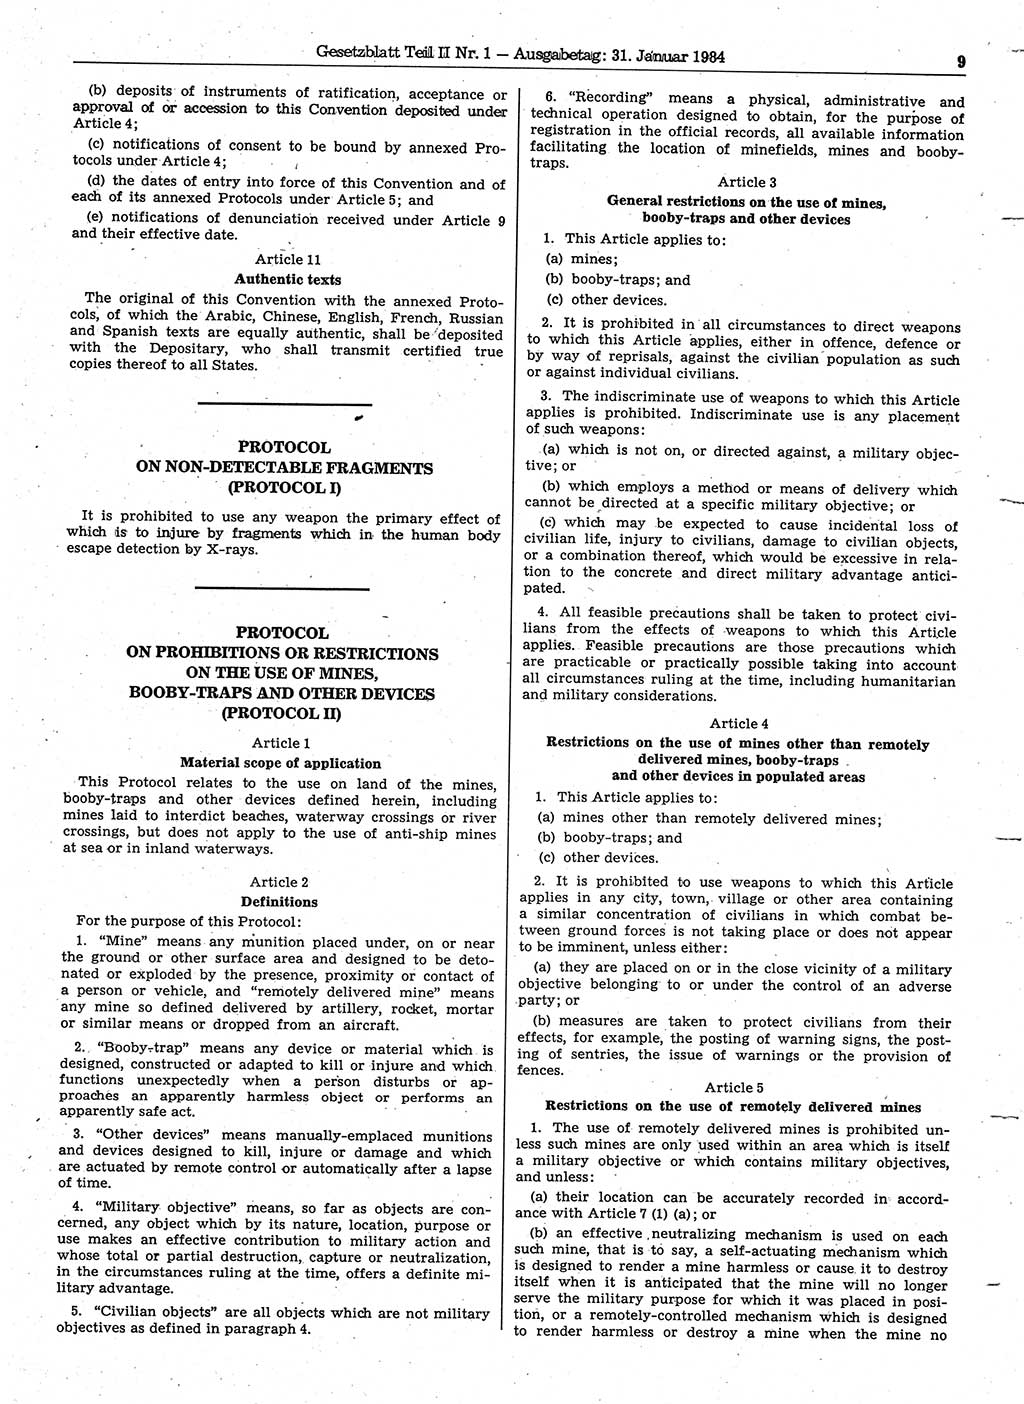 Gesetzblatt (GBl.) der Deutschen Demokratischen Republik (DDR) Teil ⅠⅠ 1984, Seite 9 (GBl. DDR ⅠⅠ 1984, S. 9)